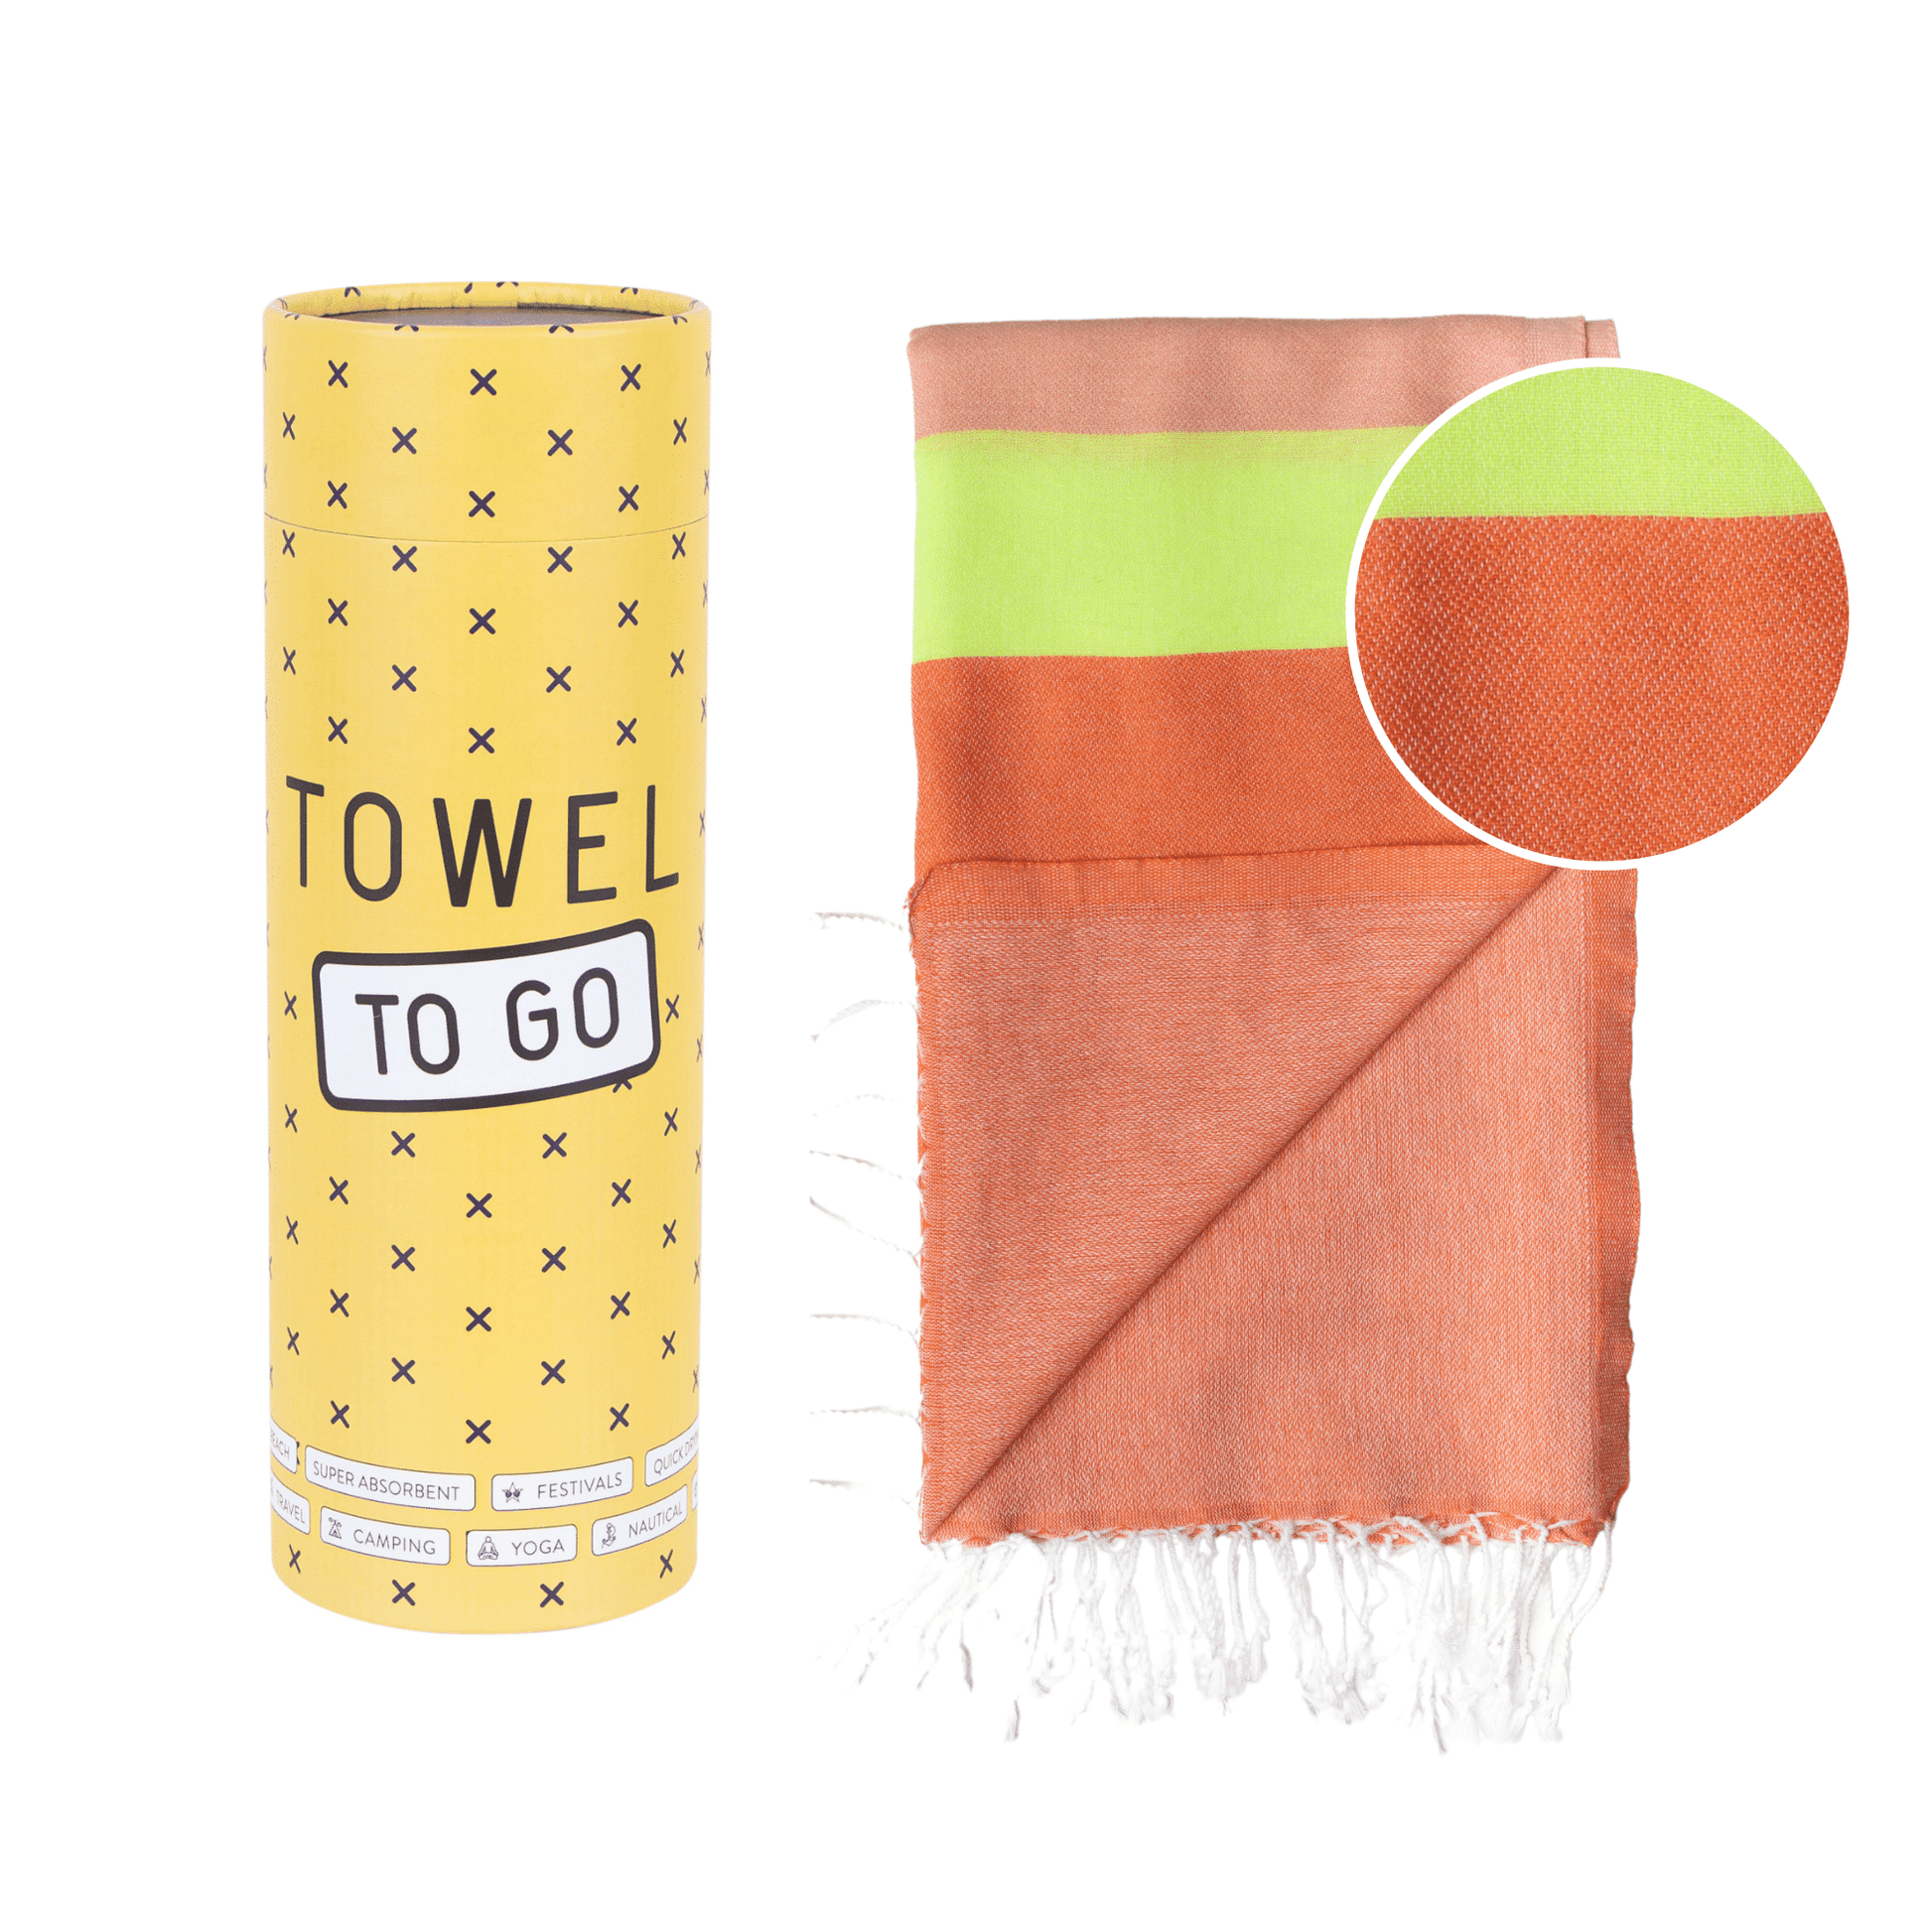 Towel to Go Neon Beach Towel Pink Orange